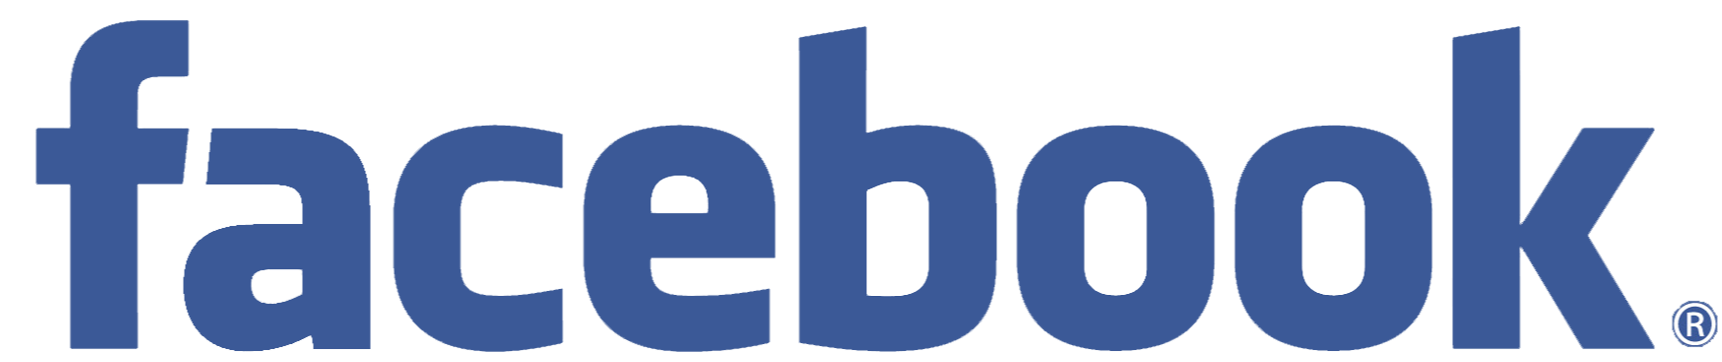 facebook like logo png transparent background